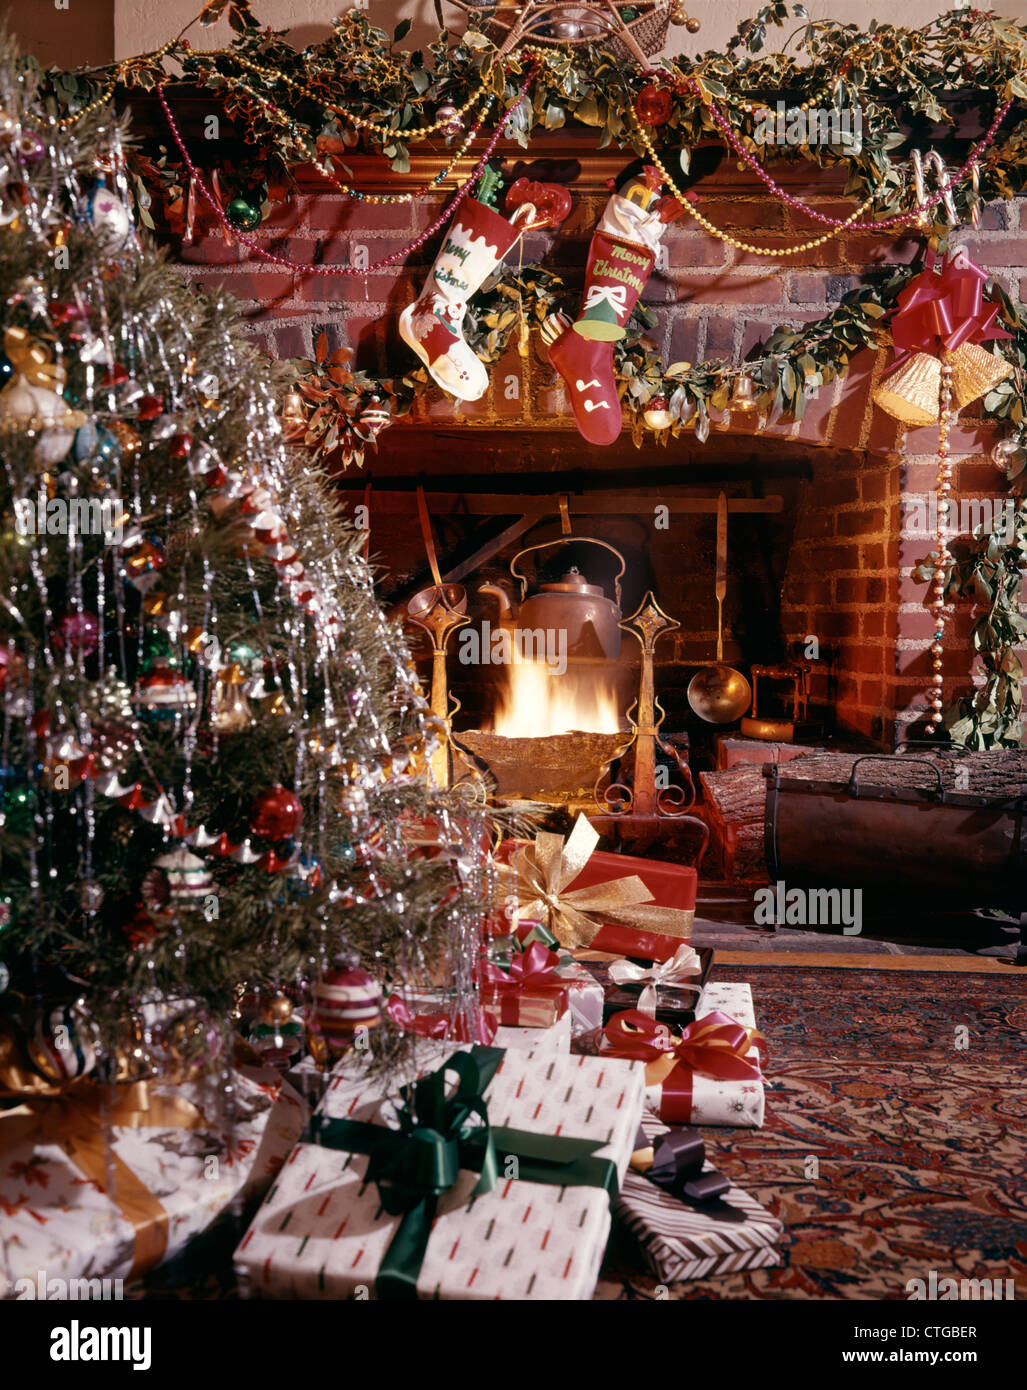 1960s CHRISTMAS TREE STOCKINGS PRESENTS DECORATION AROUND BLAZING FIREPLACE Stock Photo